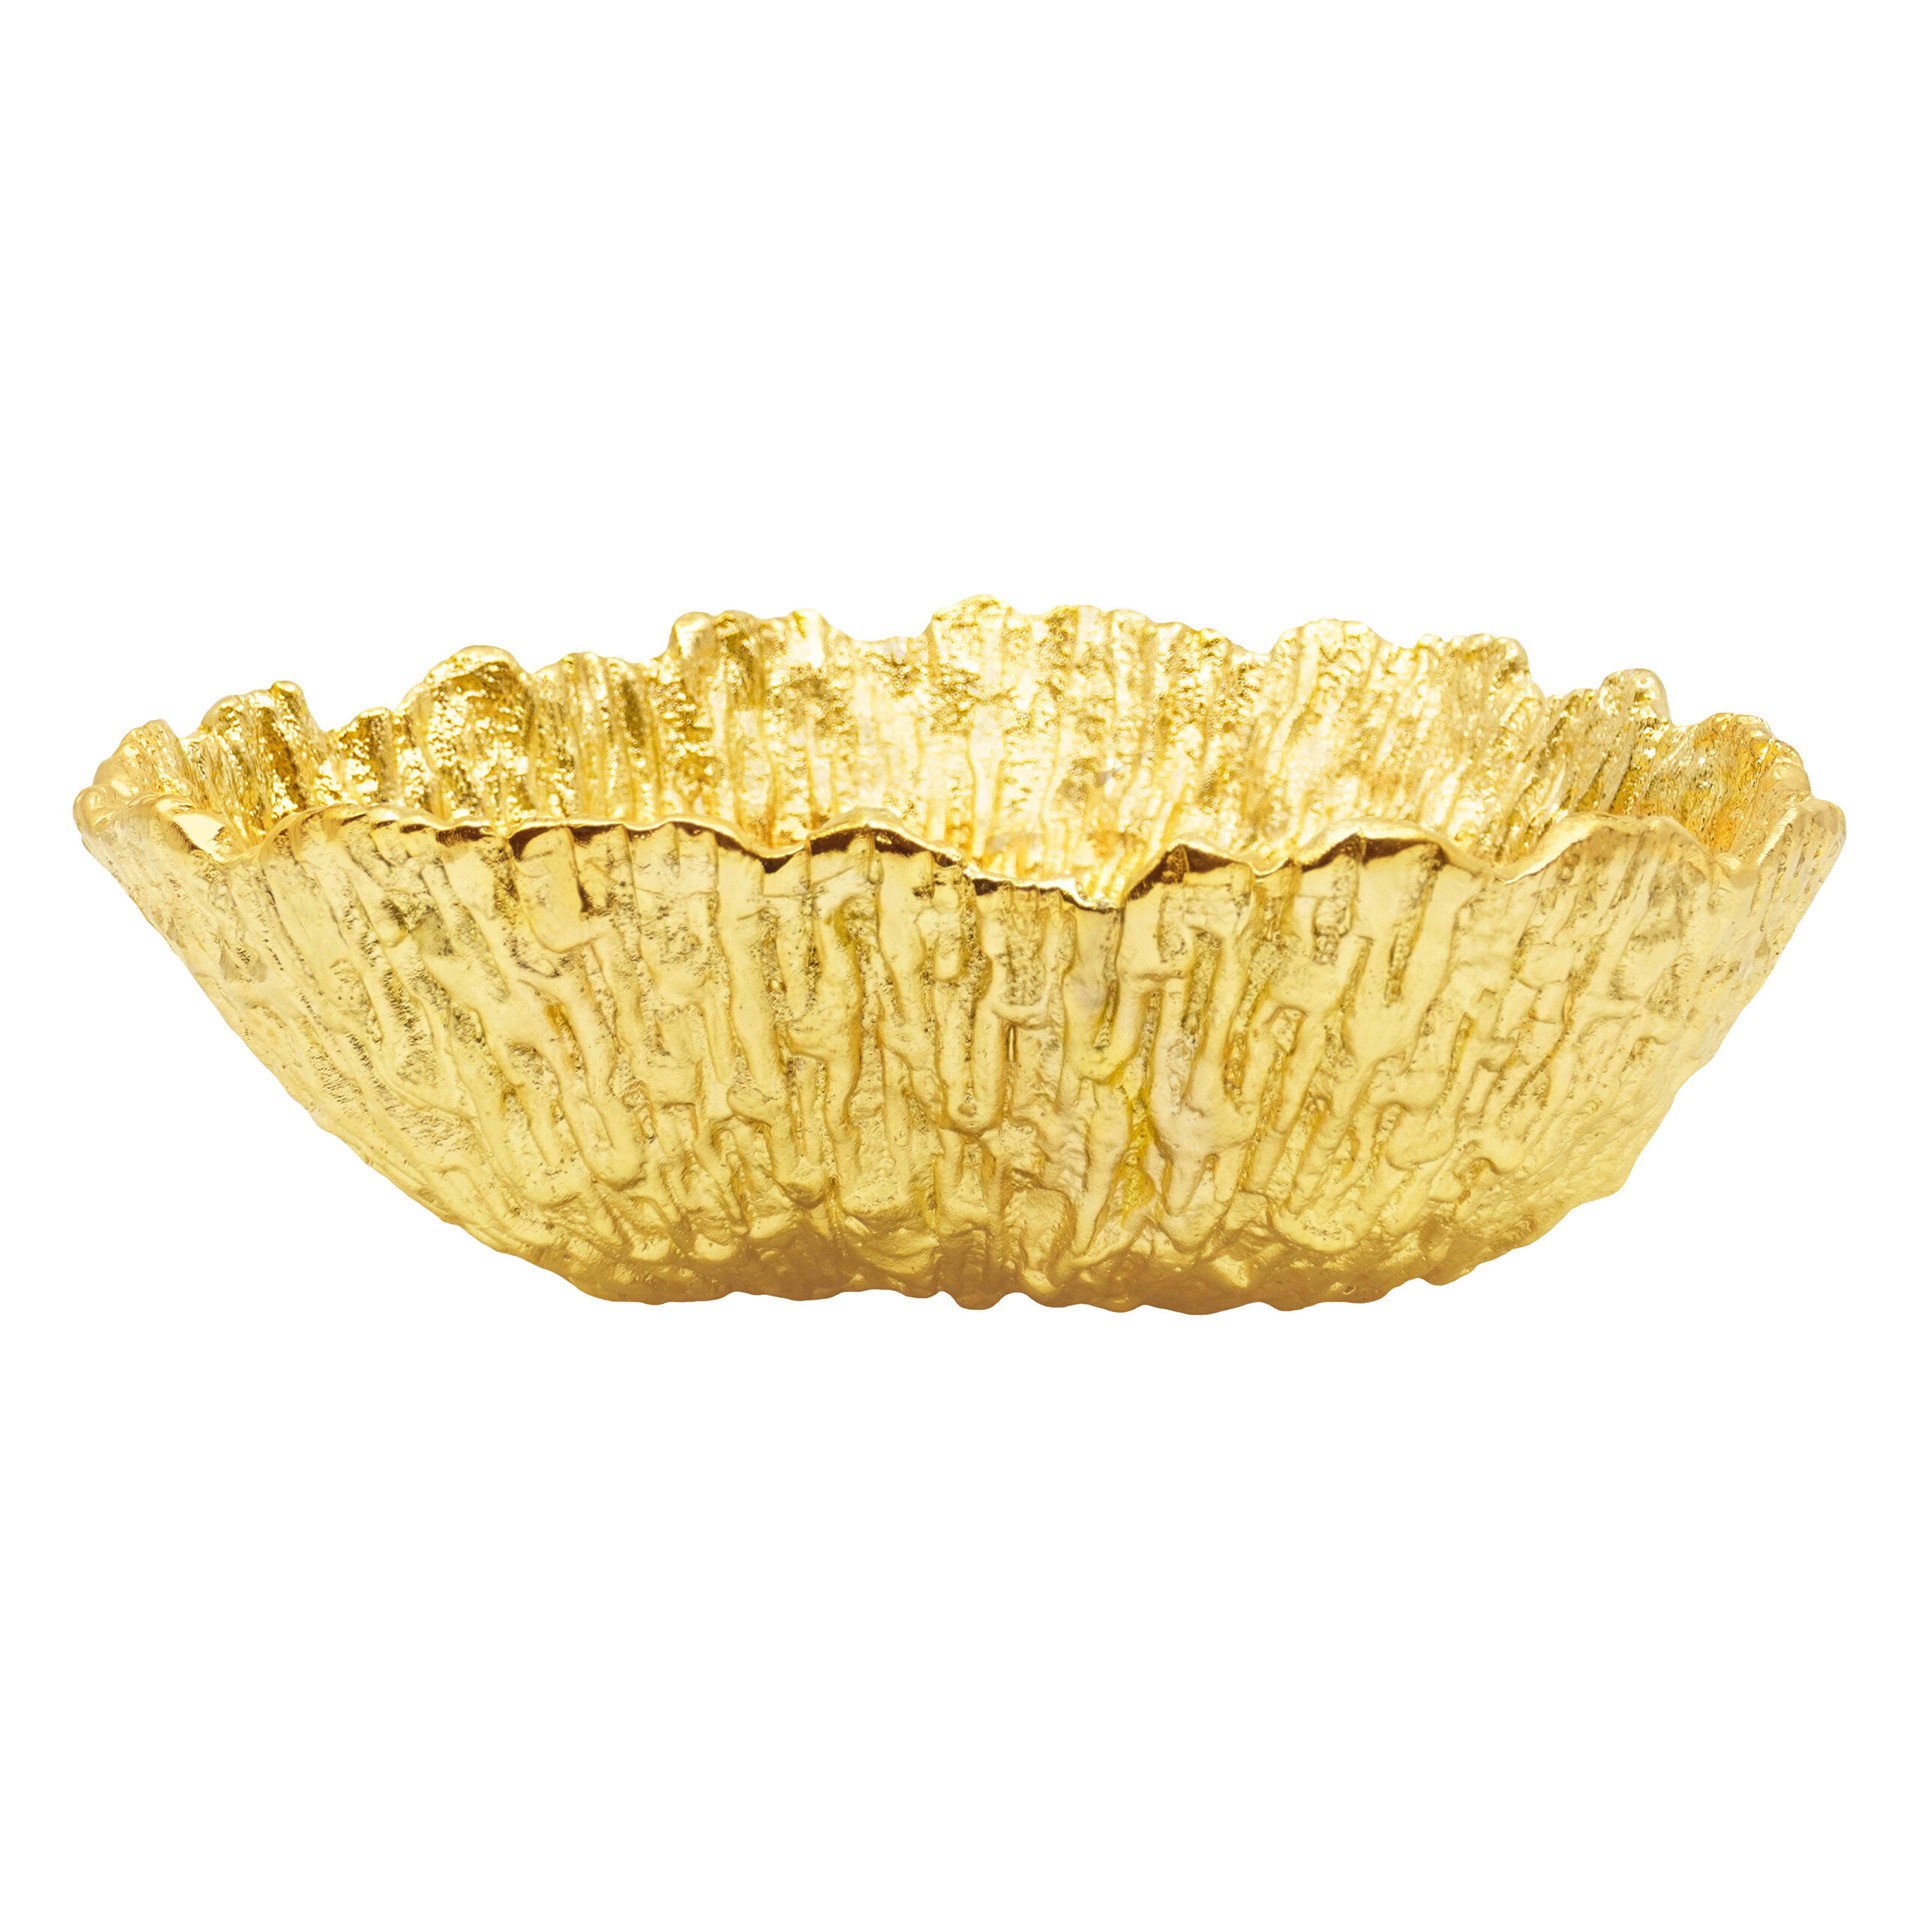 Golden bowl(Front)